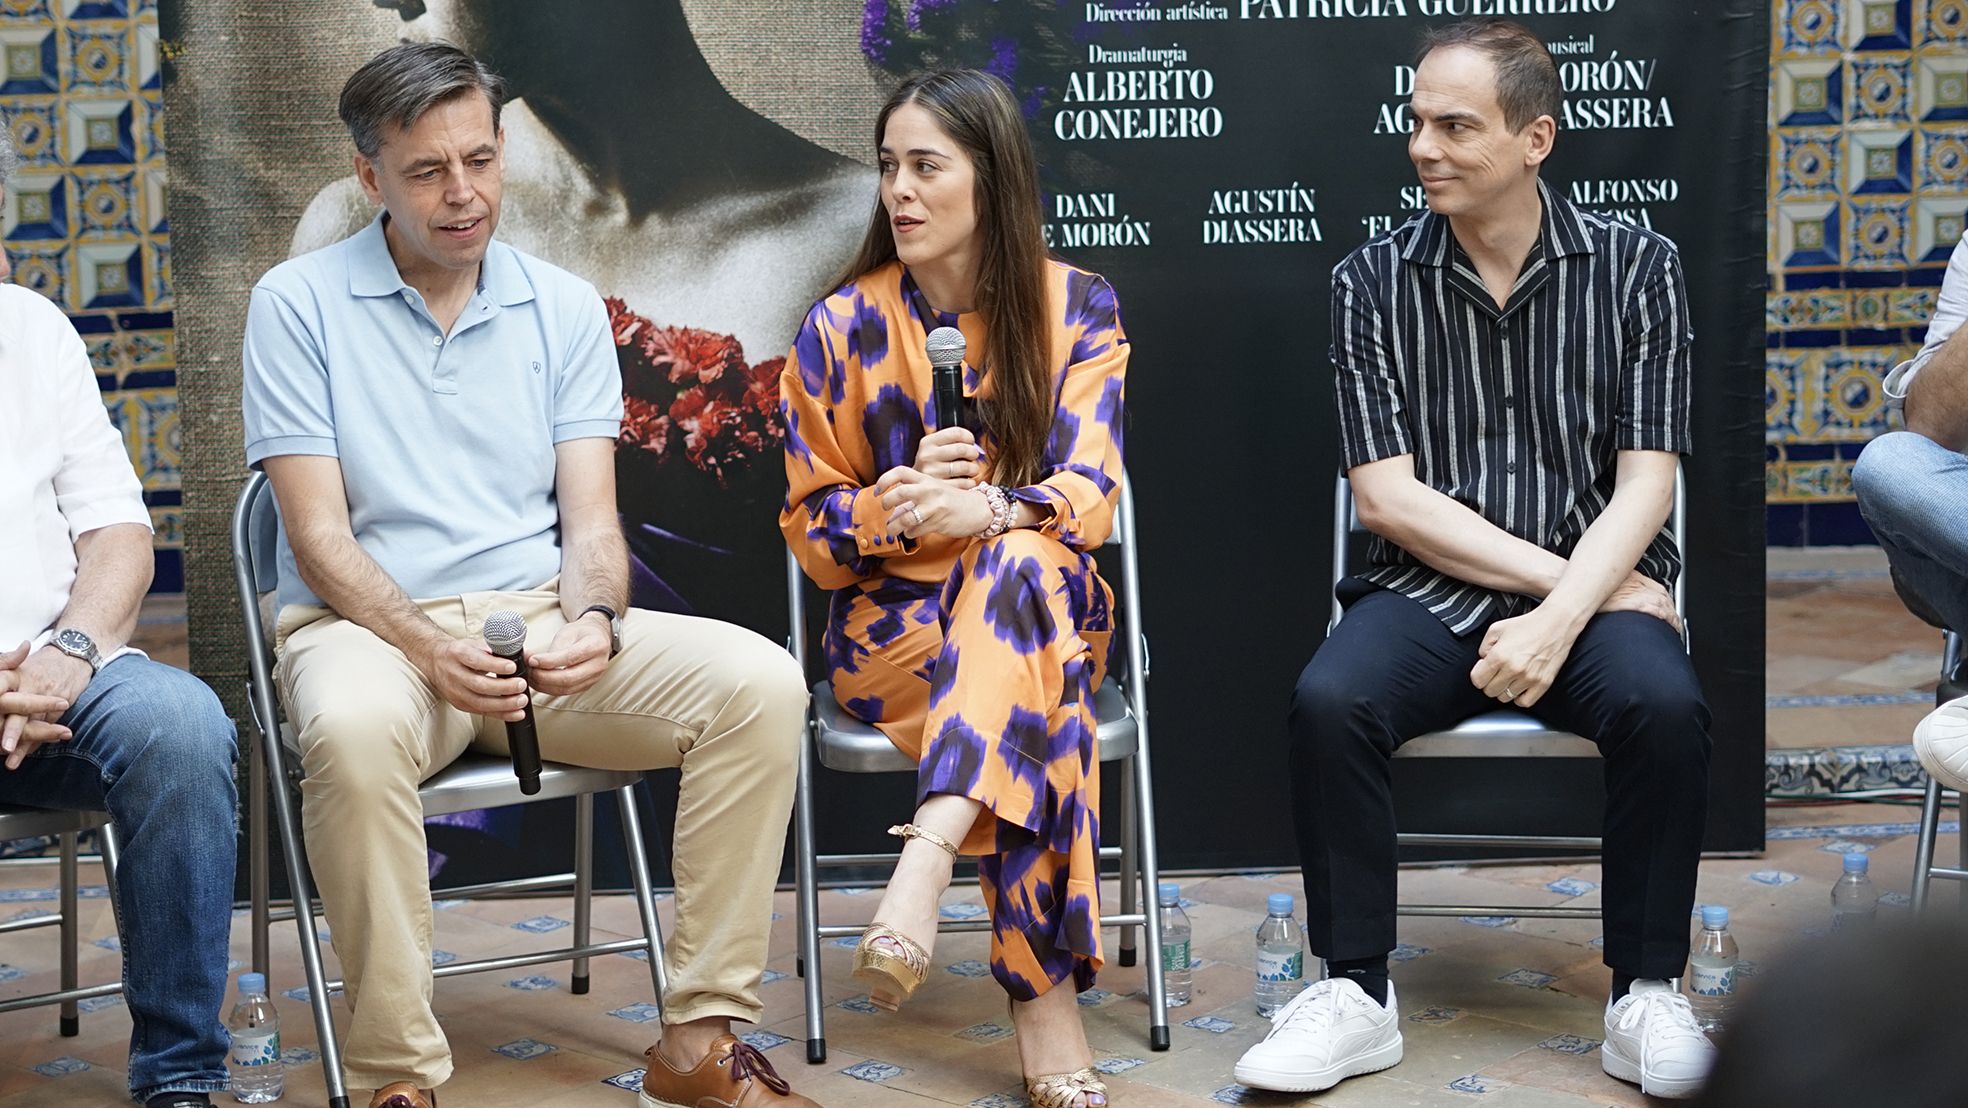 Patricia Guerero, Cristobal Ortega y Alberto Conejero, esta mañana en el Instituto Andaluz de Flamenco.